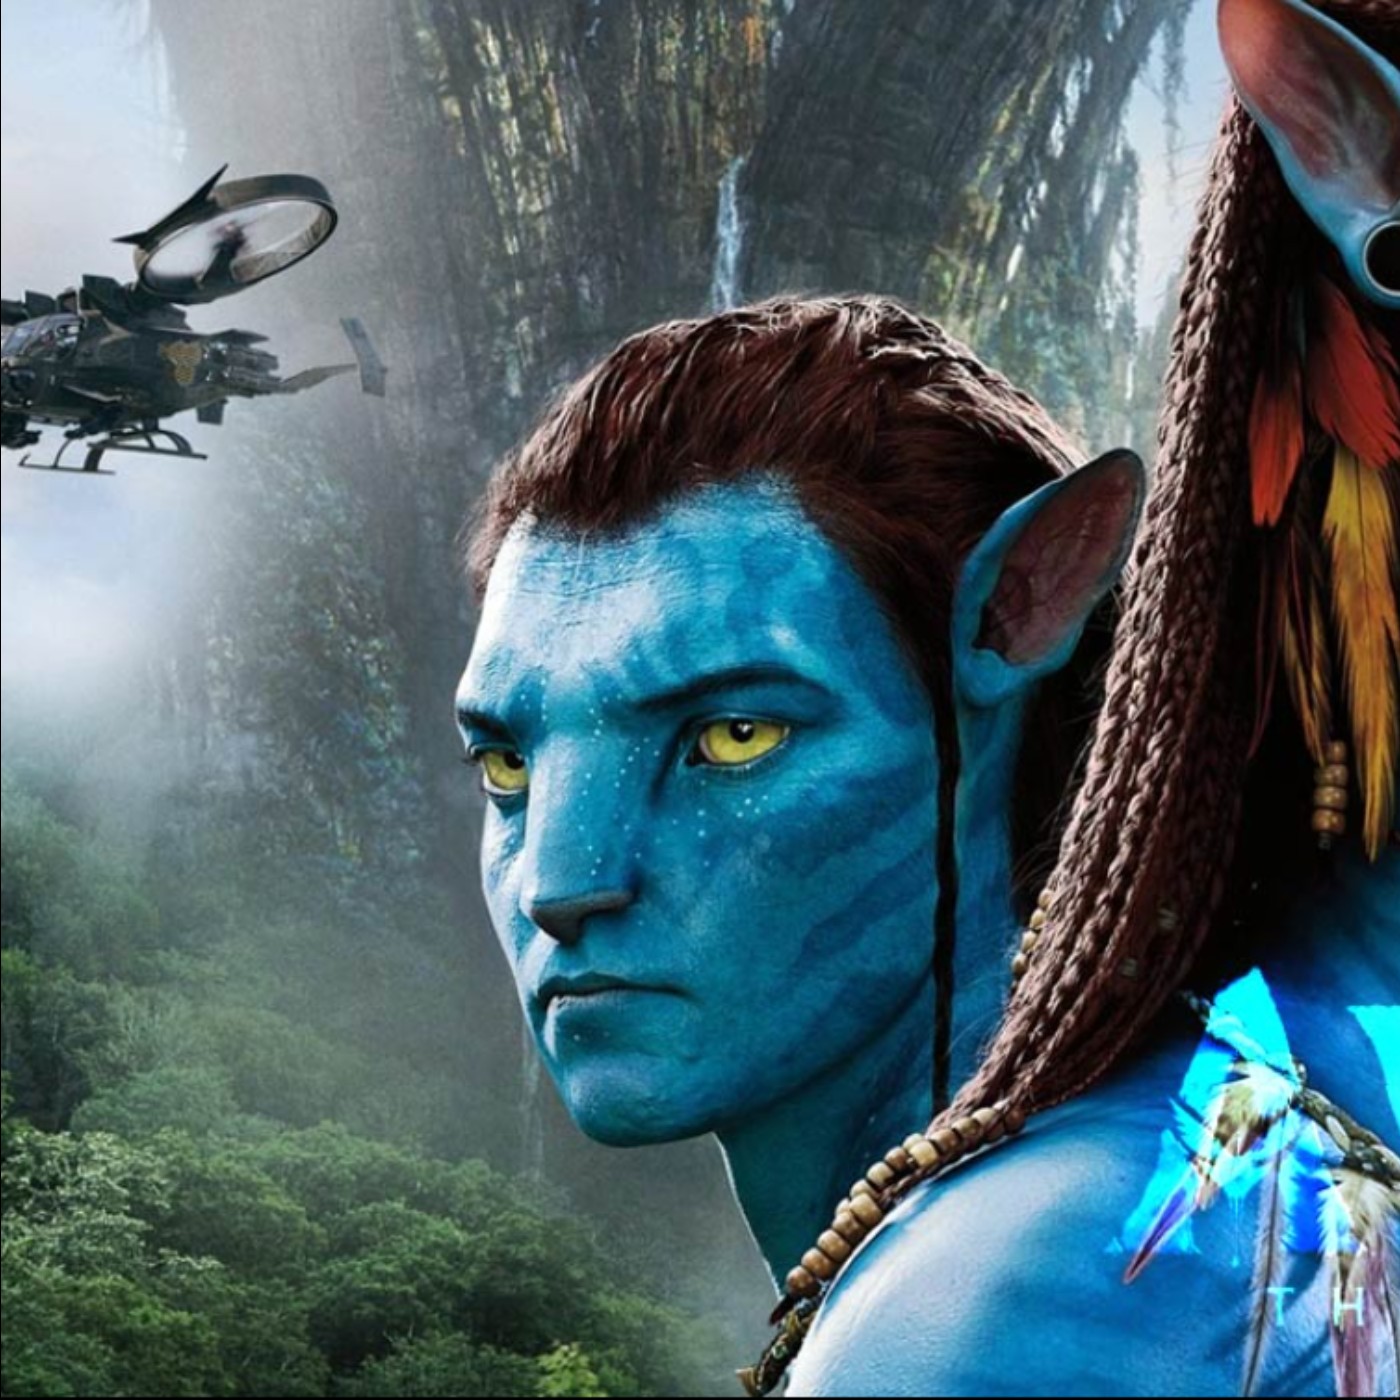 Avatar giành lại ngôi vị phim ăn khách nhất từ Avengers Endgame  Phim  ảnh